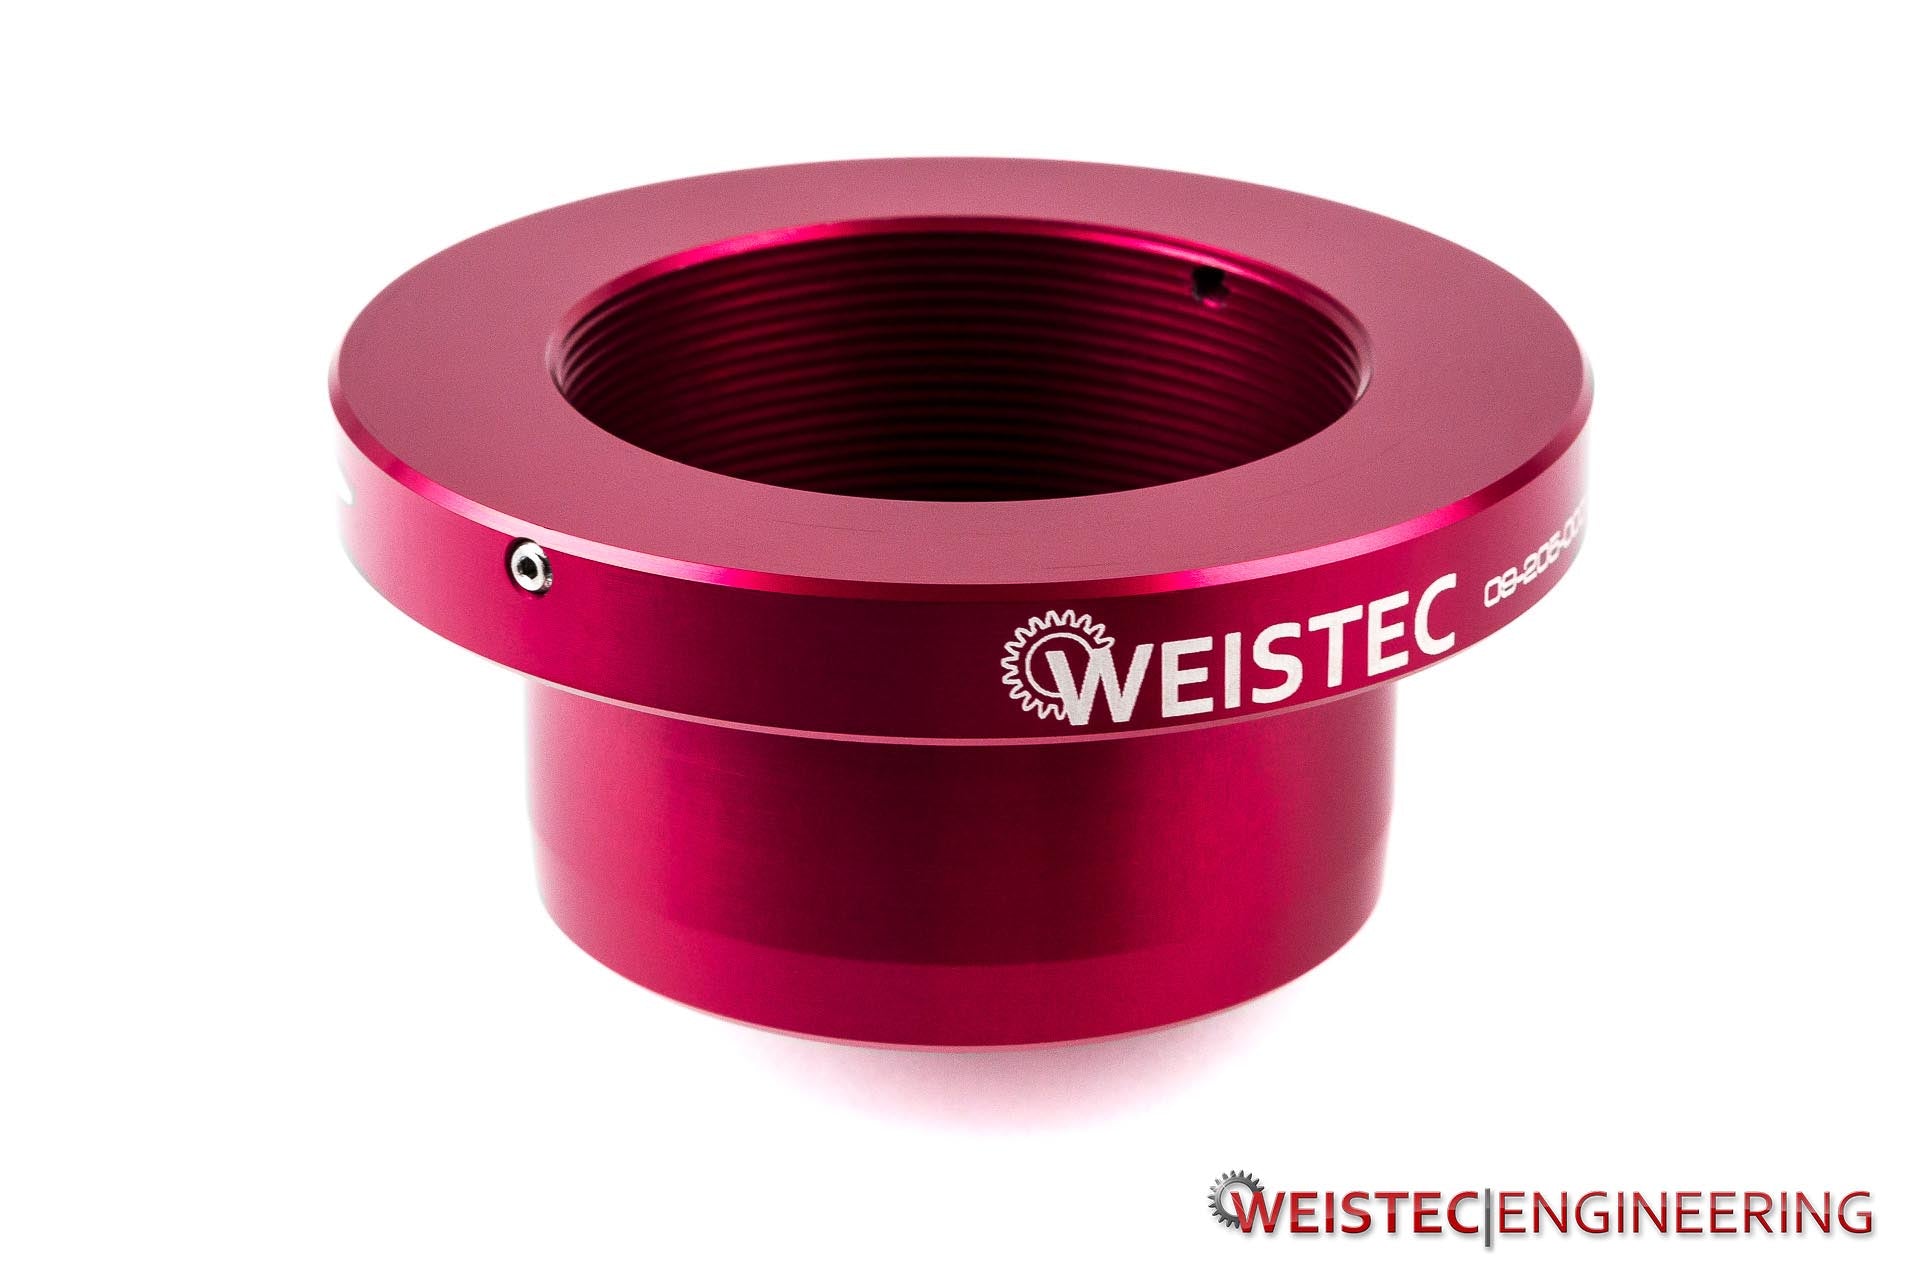 Weistec C63 / C63S Adjustable Suspension, W205